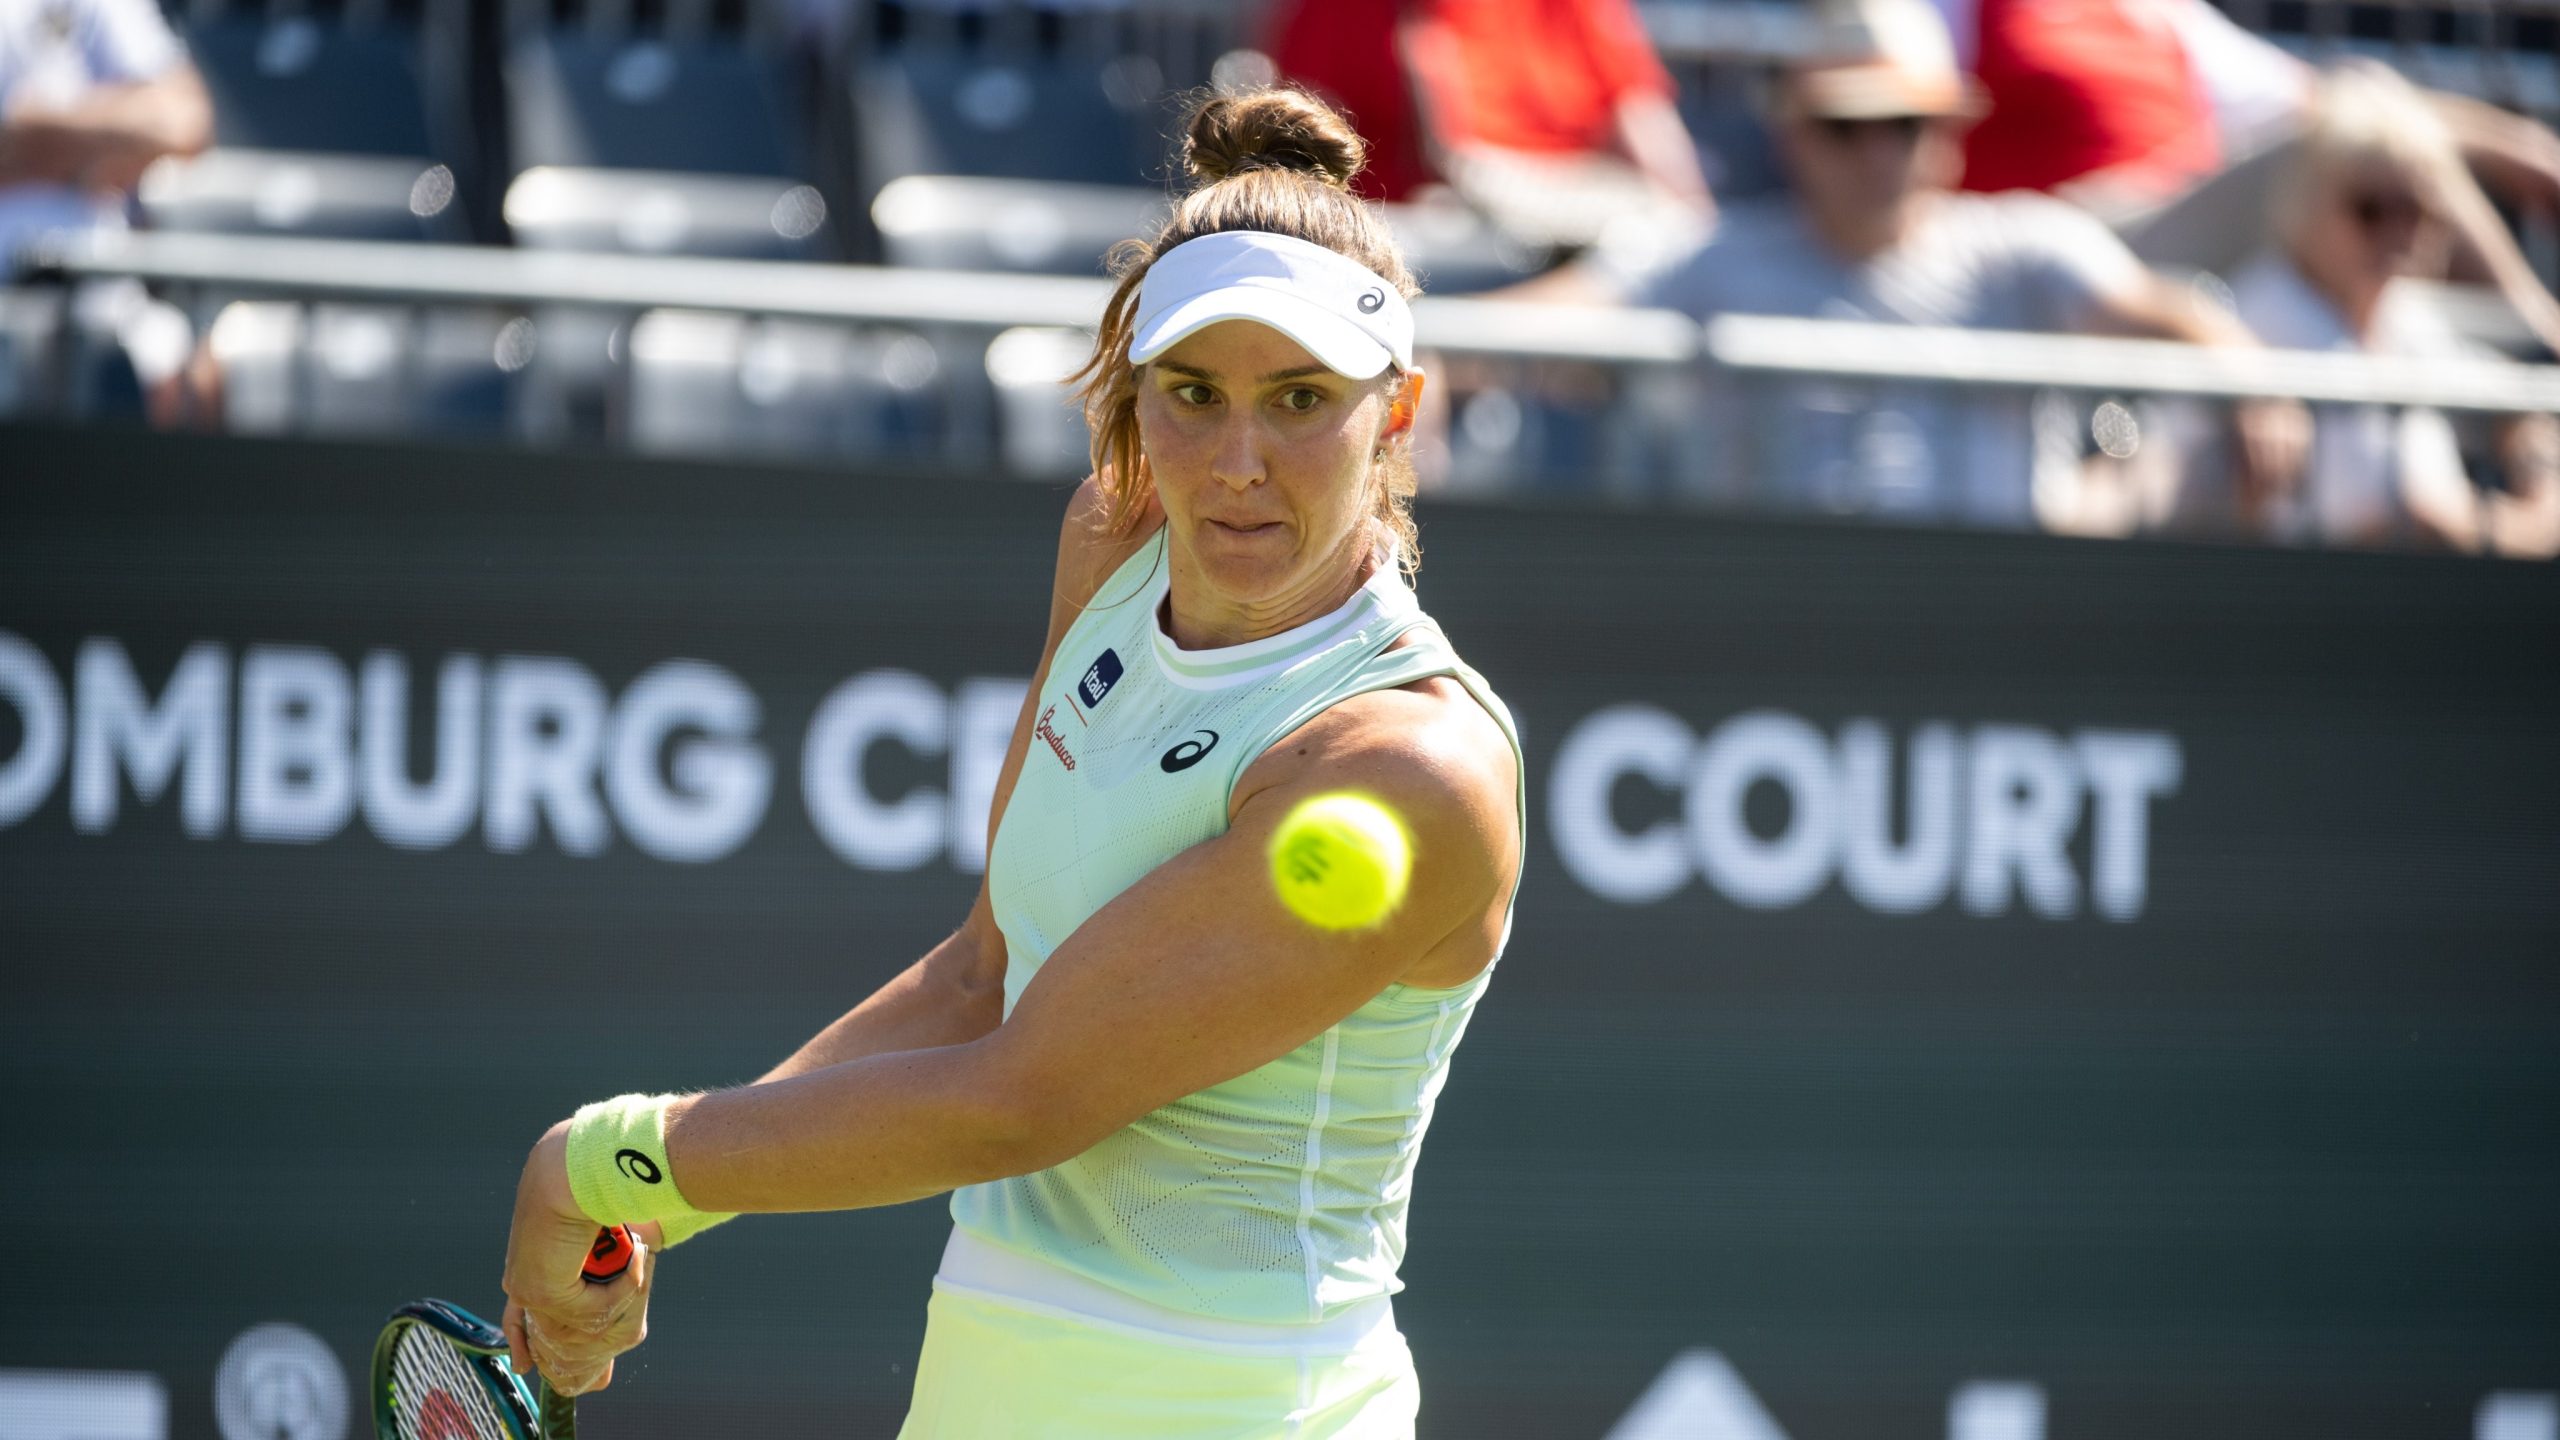 Tênis: Colombiana Camila Osório sofre lesão na coxa, abandona partida e Bia Haddad avança em Wimbledon